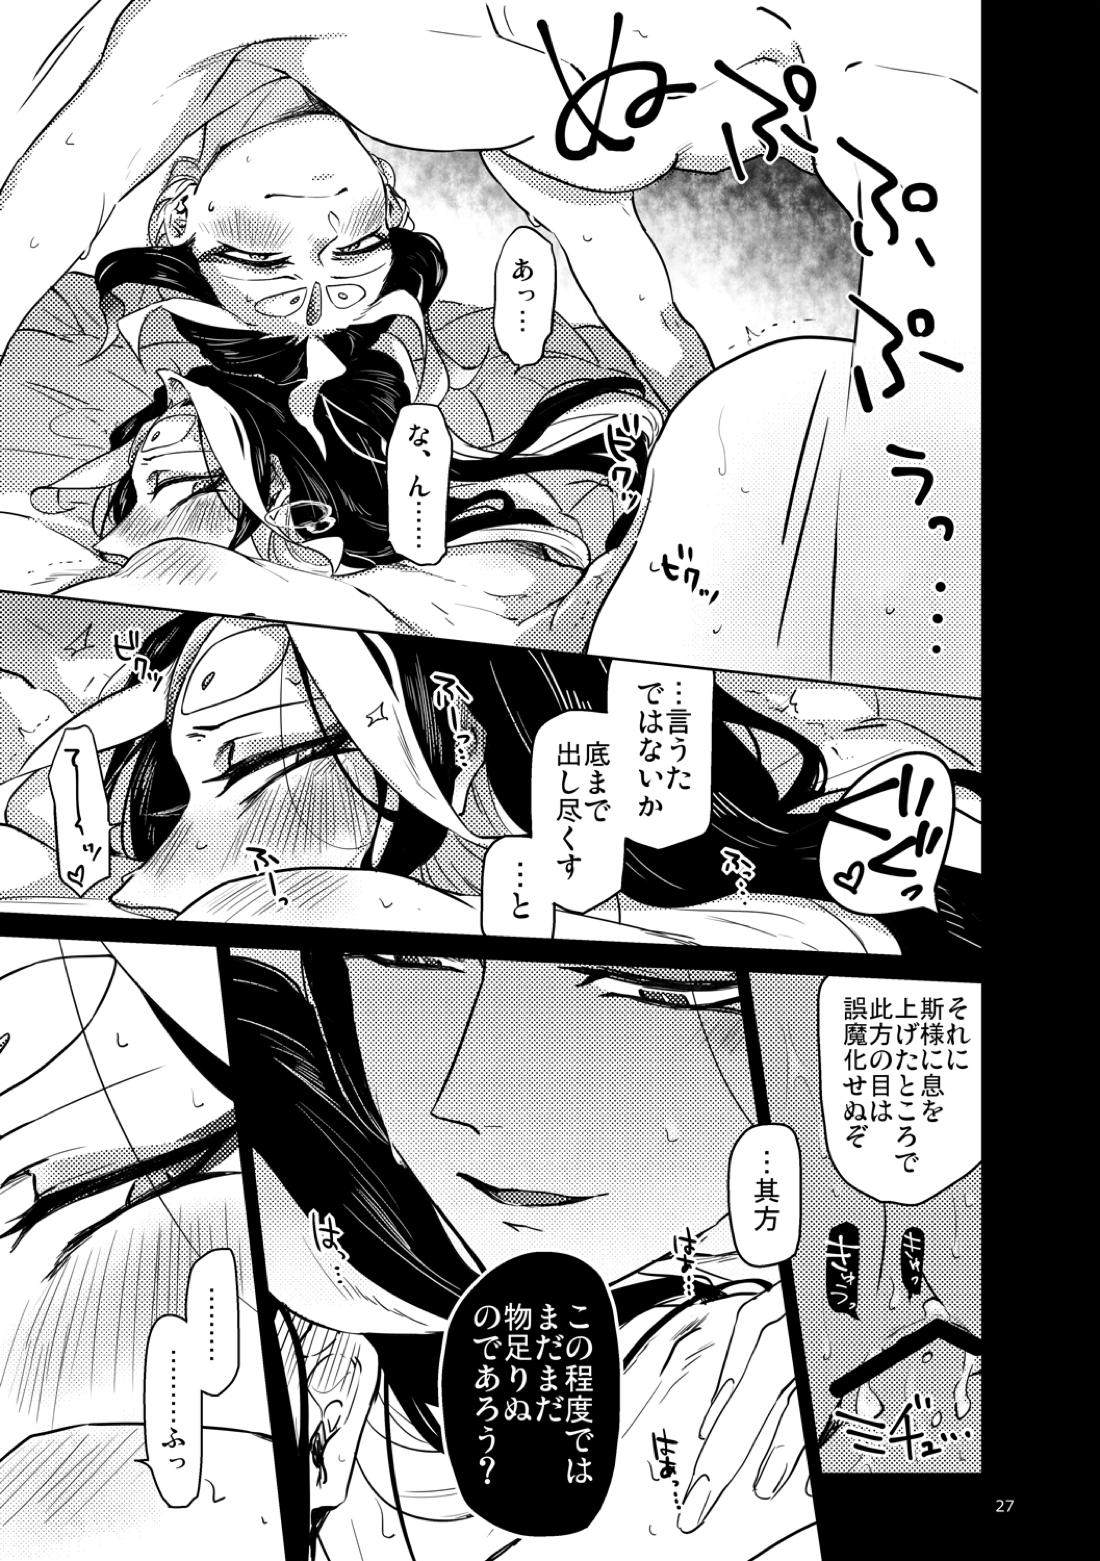 【BL漫画 Fate/Grand Order】男性体と無性体の始皇帝が同期するために媚薬を口にしながら肌を重ねるイチャイチャボーイズラブエッチ28